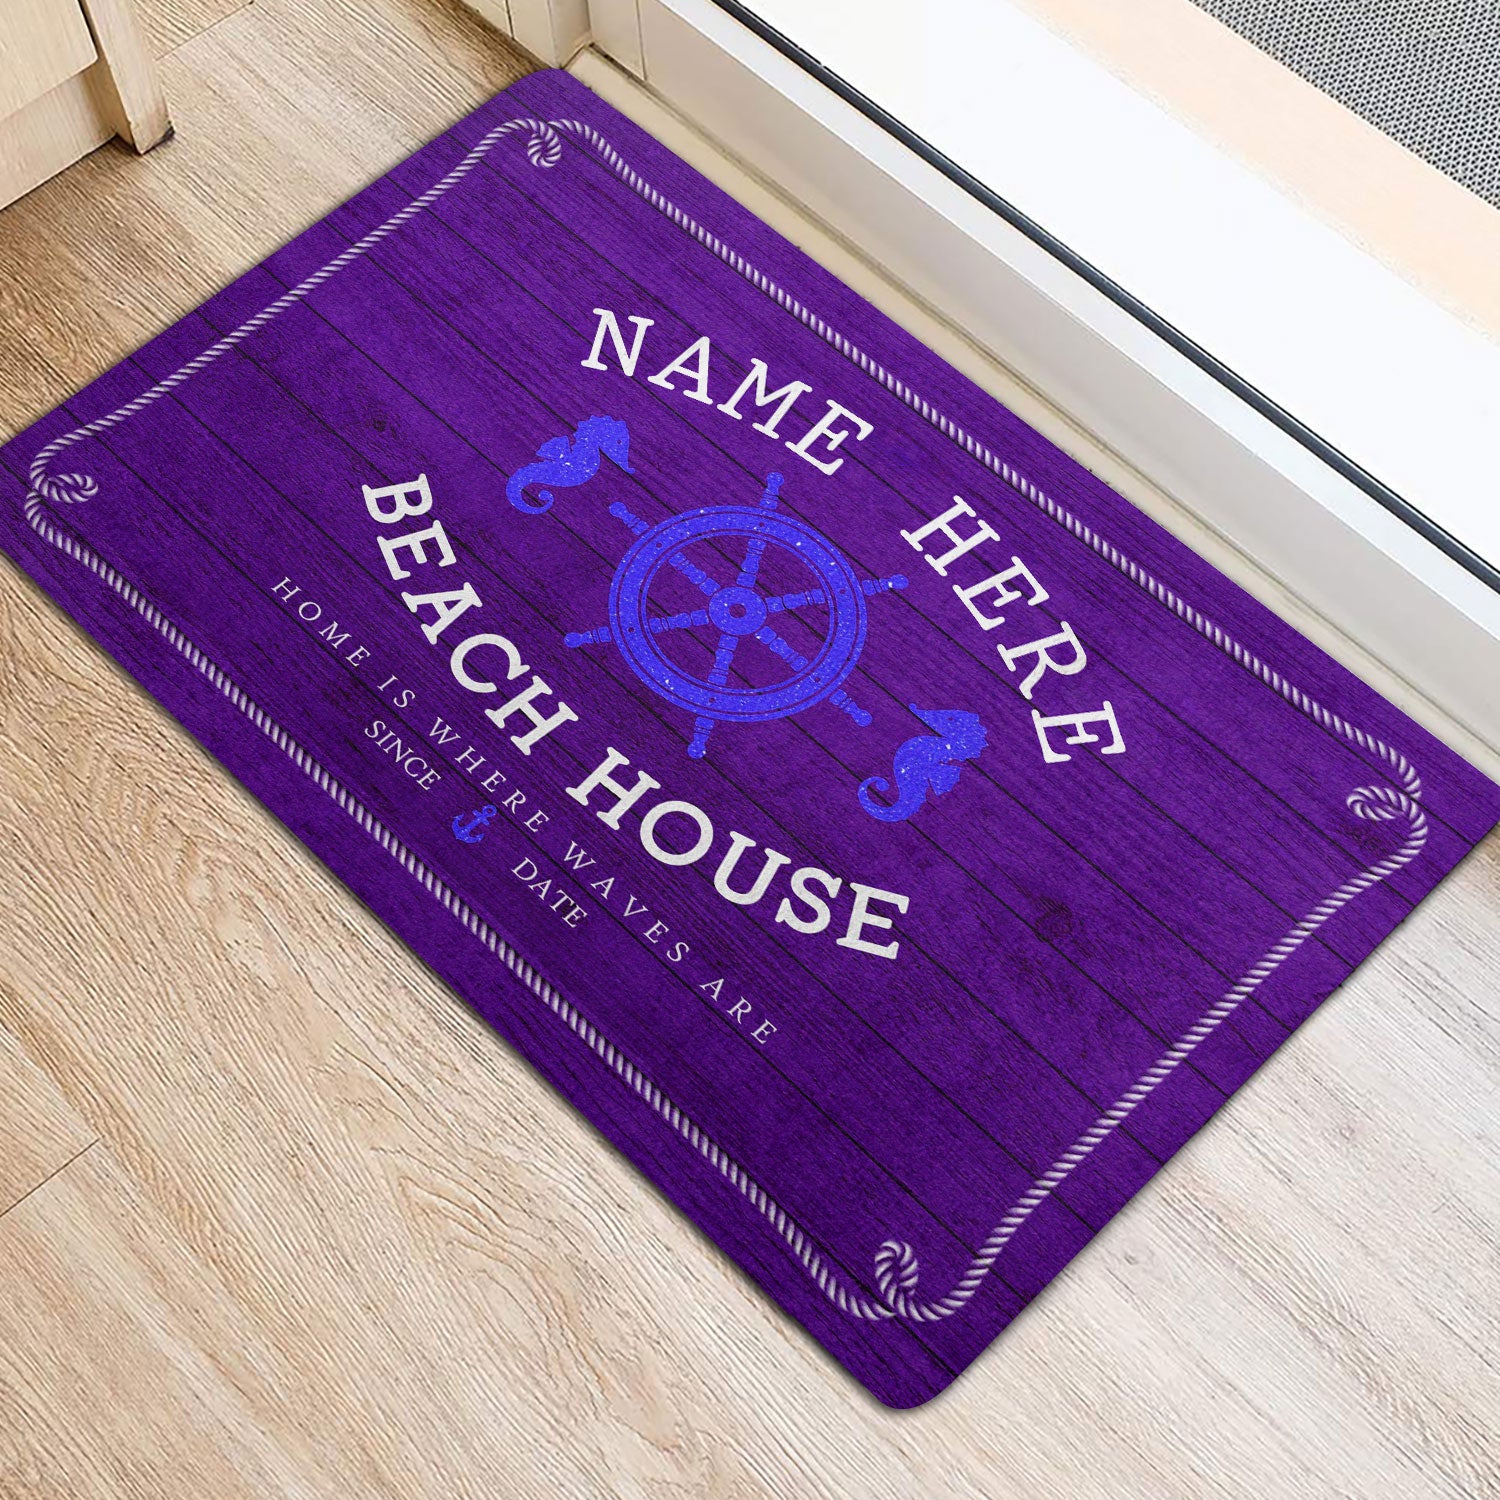 Ohaprints-Doormat-Outdoor-Indoor-Purple-Beach-House-Seahorse-Custom-Personalized-Name-Number-Rubber-Door-Mat-202-